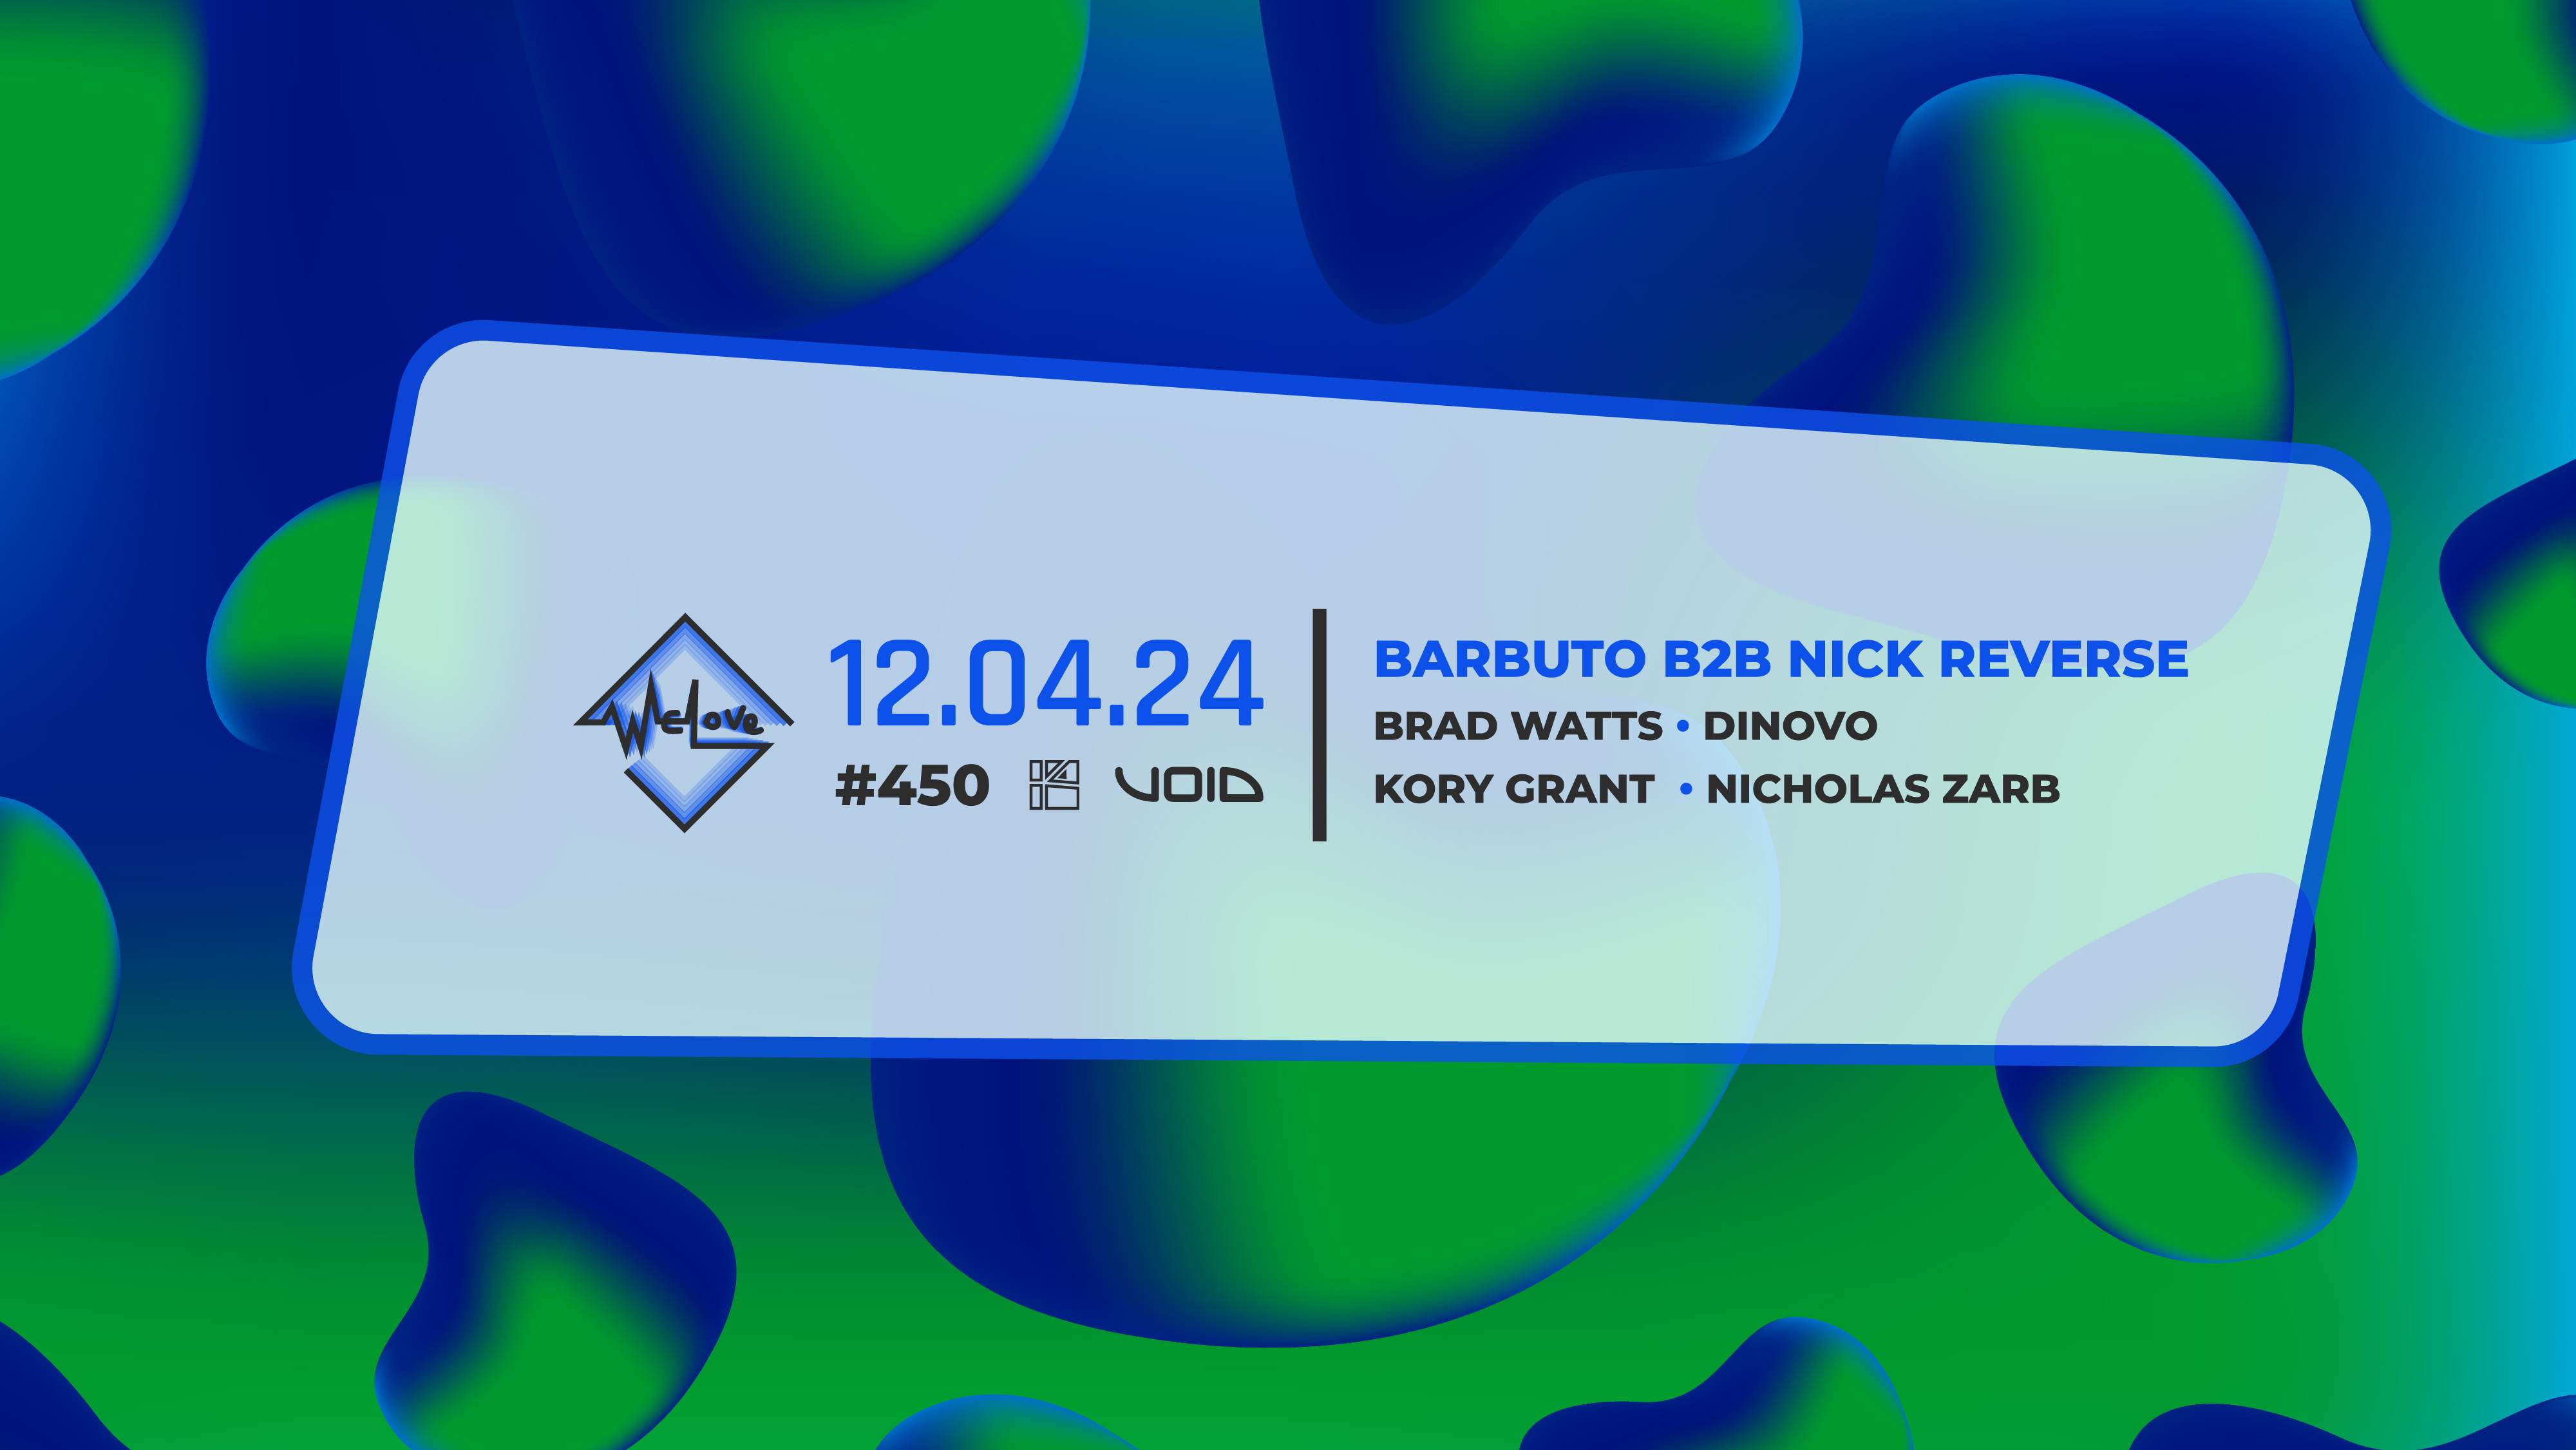 WeLove #450 - Barbuto b2b Nick Reverse - フライヤー表